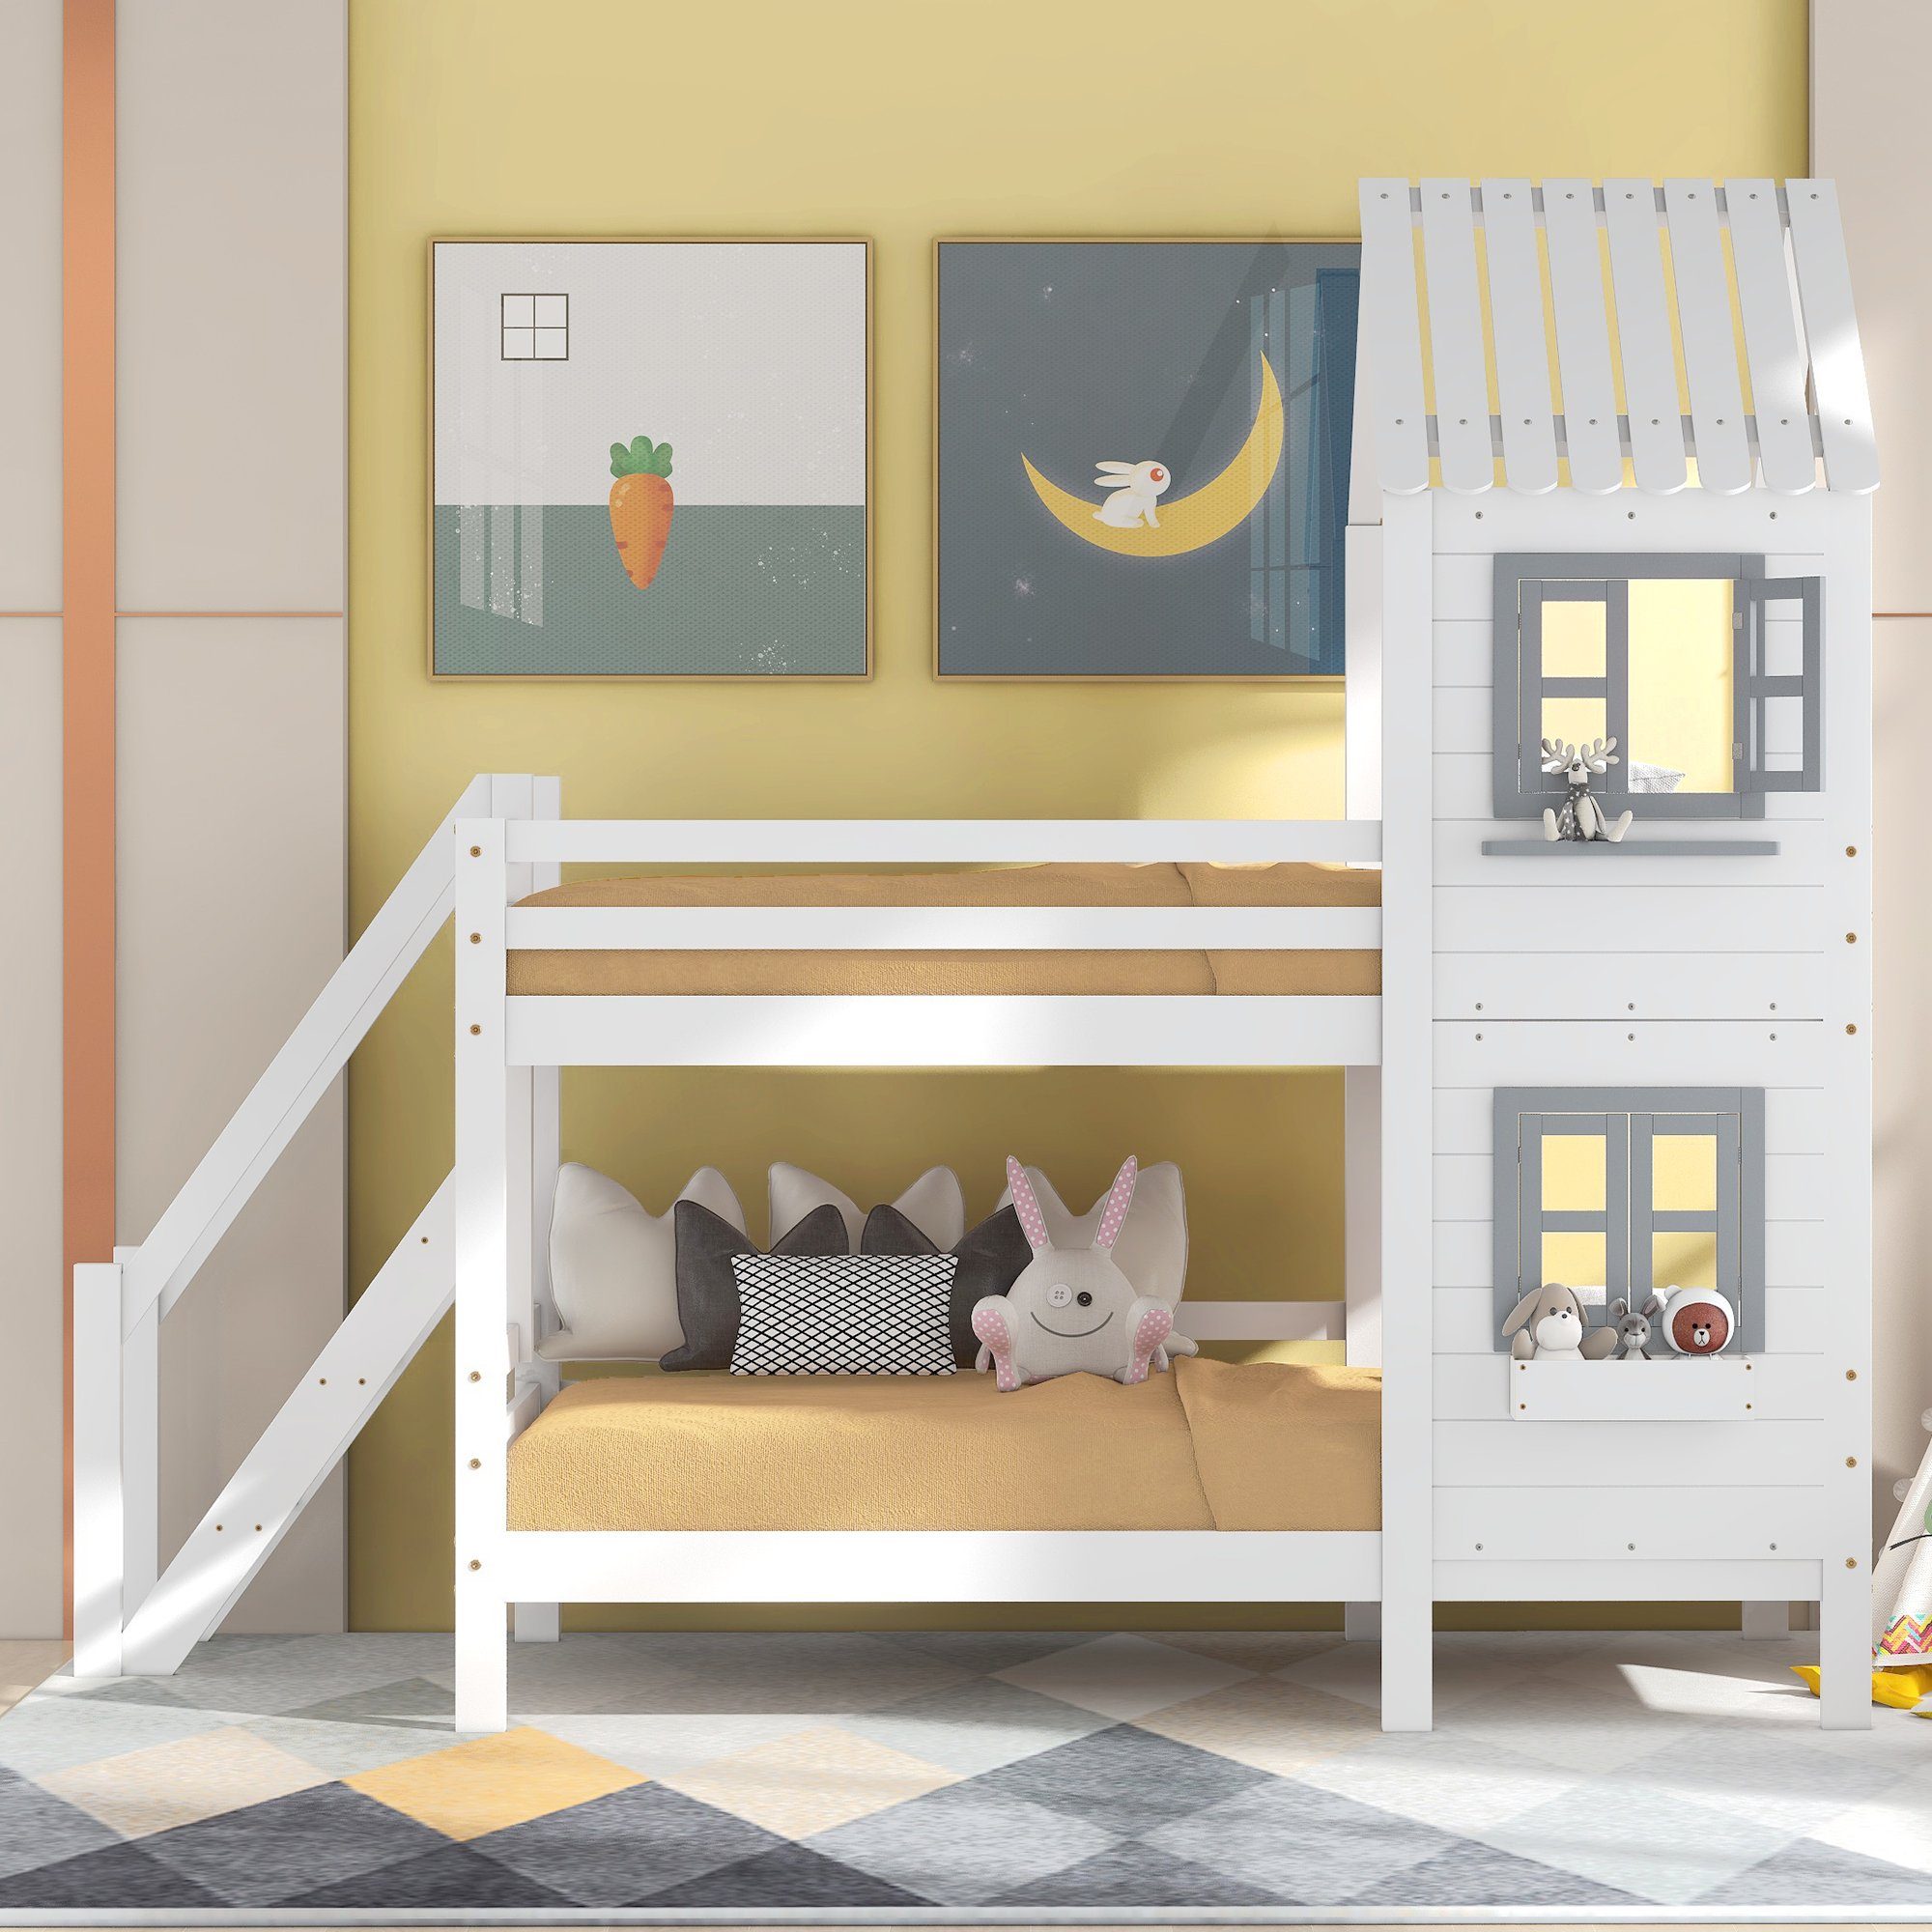 Ulife Etagenbett Weiß Kiefer Hausbett mit Fallschutz Fenster Leiter Kinderbett, 90x200cm